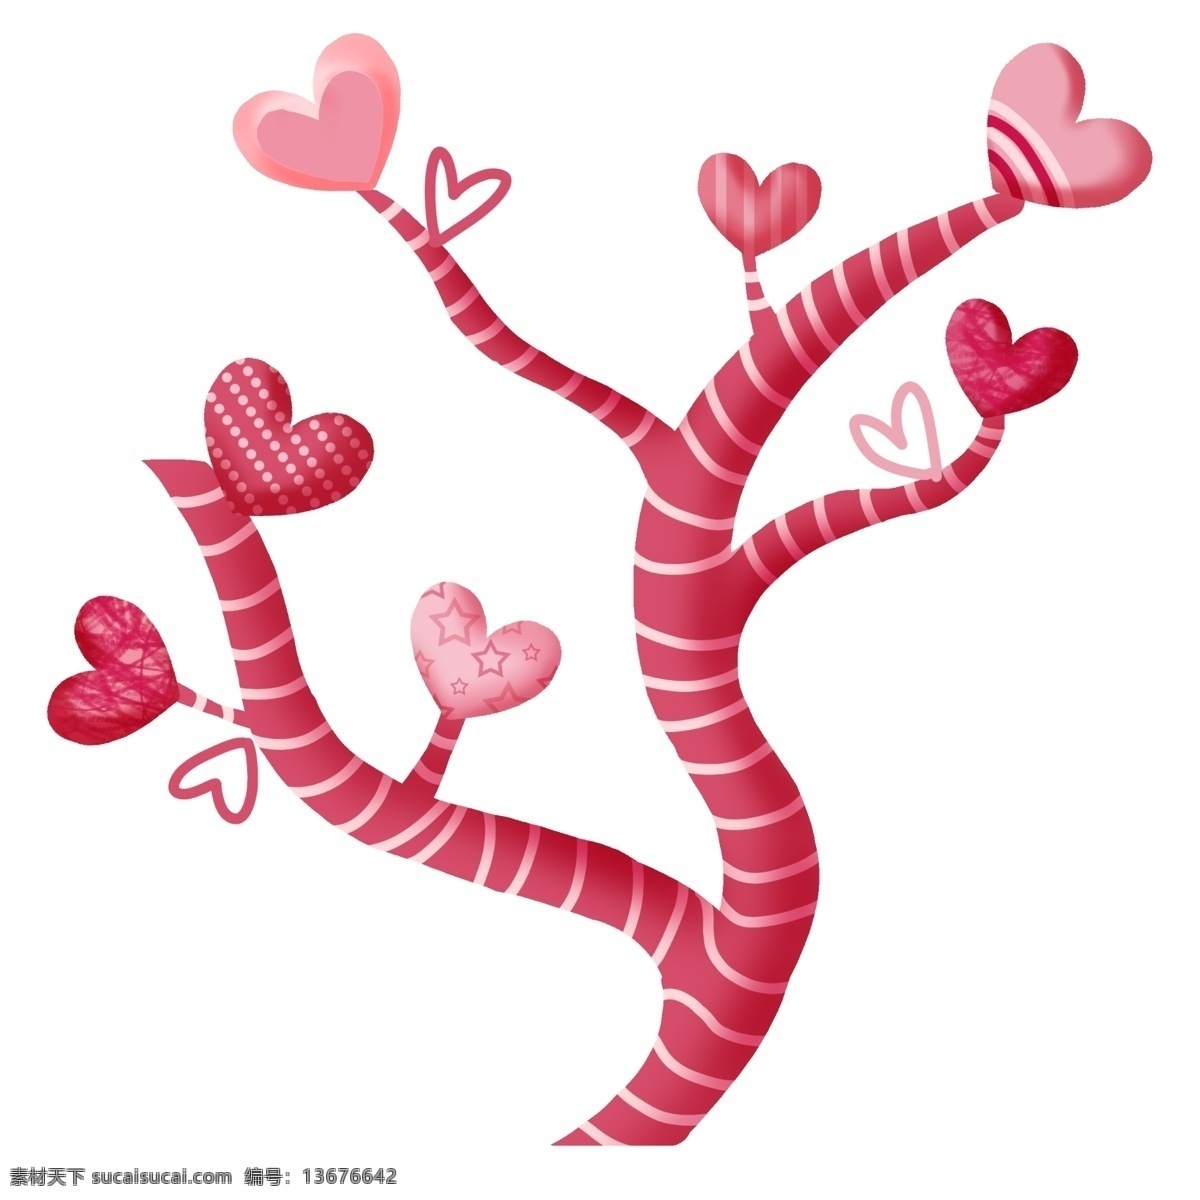 爱心 小树 装饰 插画 粉色的爱心 爱心气球 卡通插画 气球插画 爱情插画 礼物插画 爱心的小树